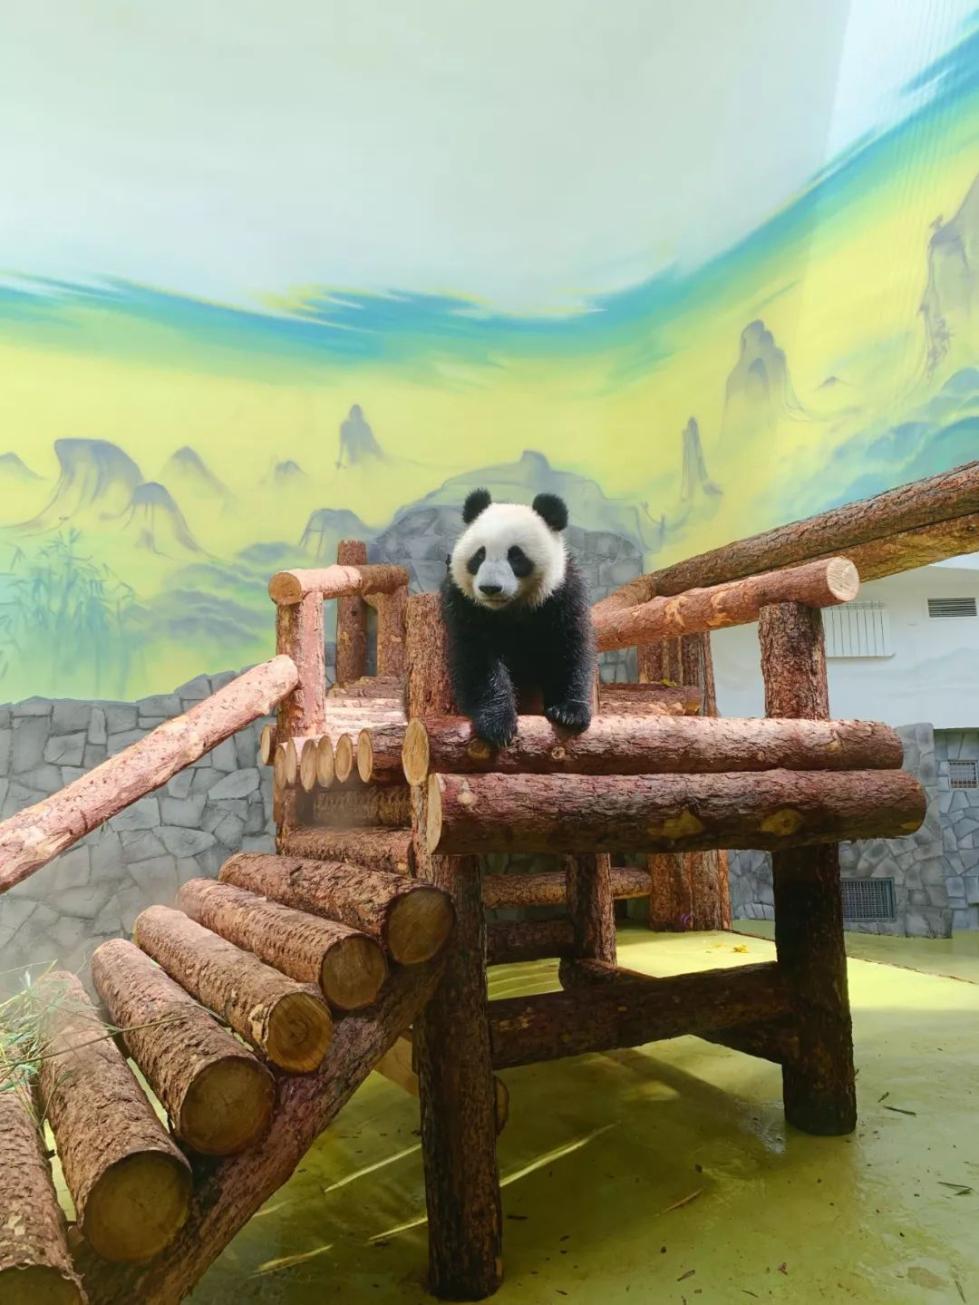 大熊貓“丁丁”在室內運動場